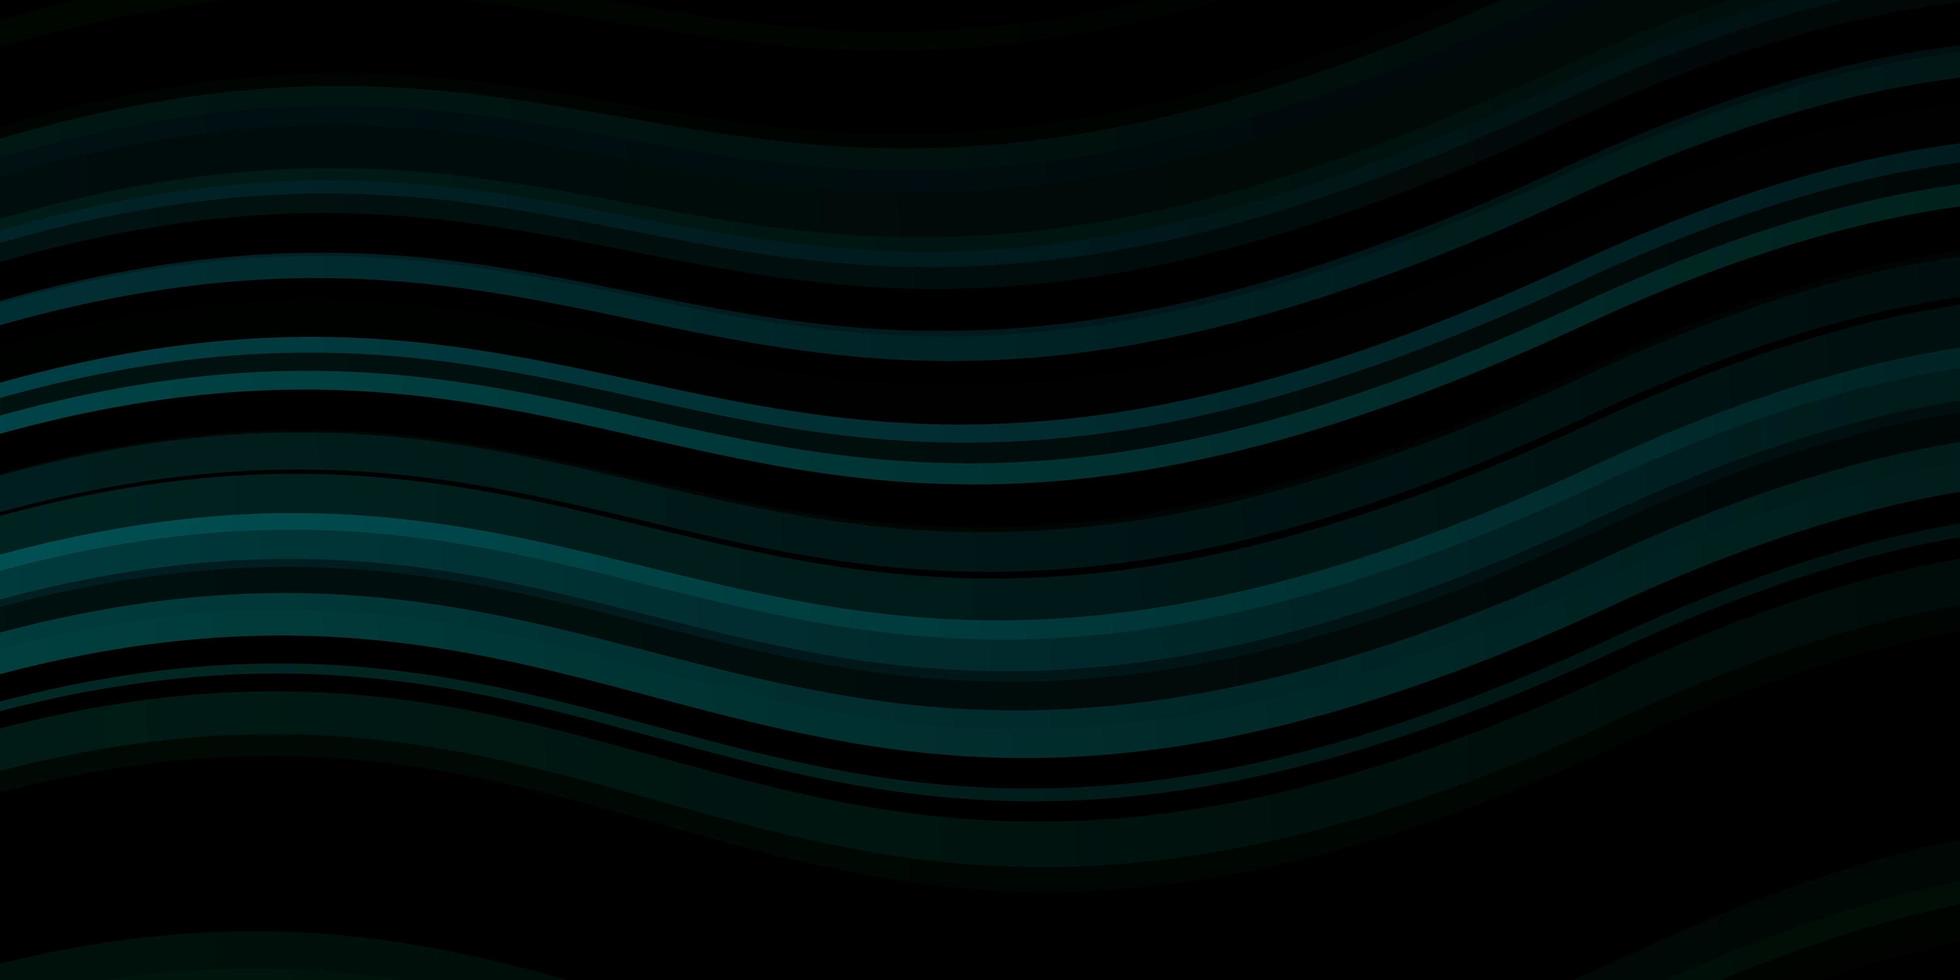 mörkgrön vektorbakgrund med bågar. vektor